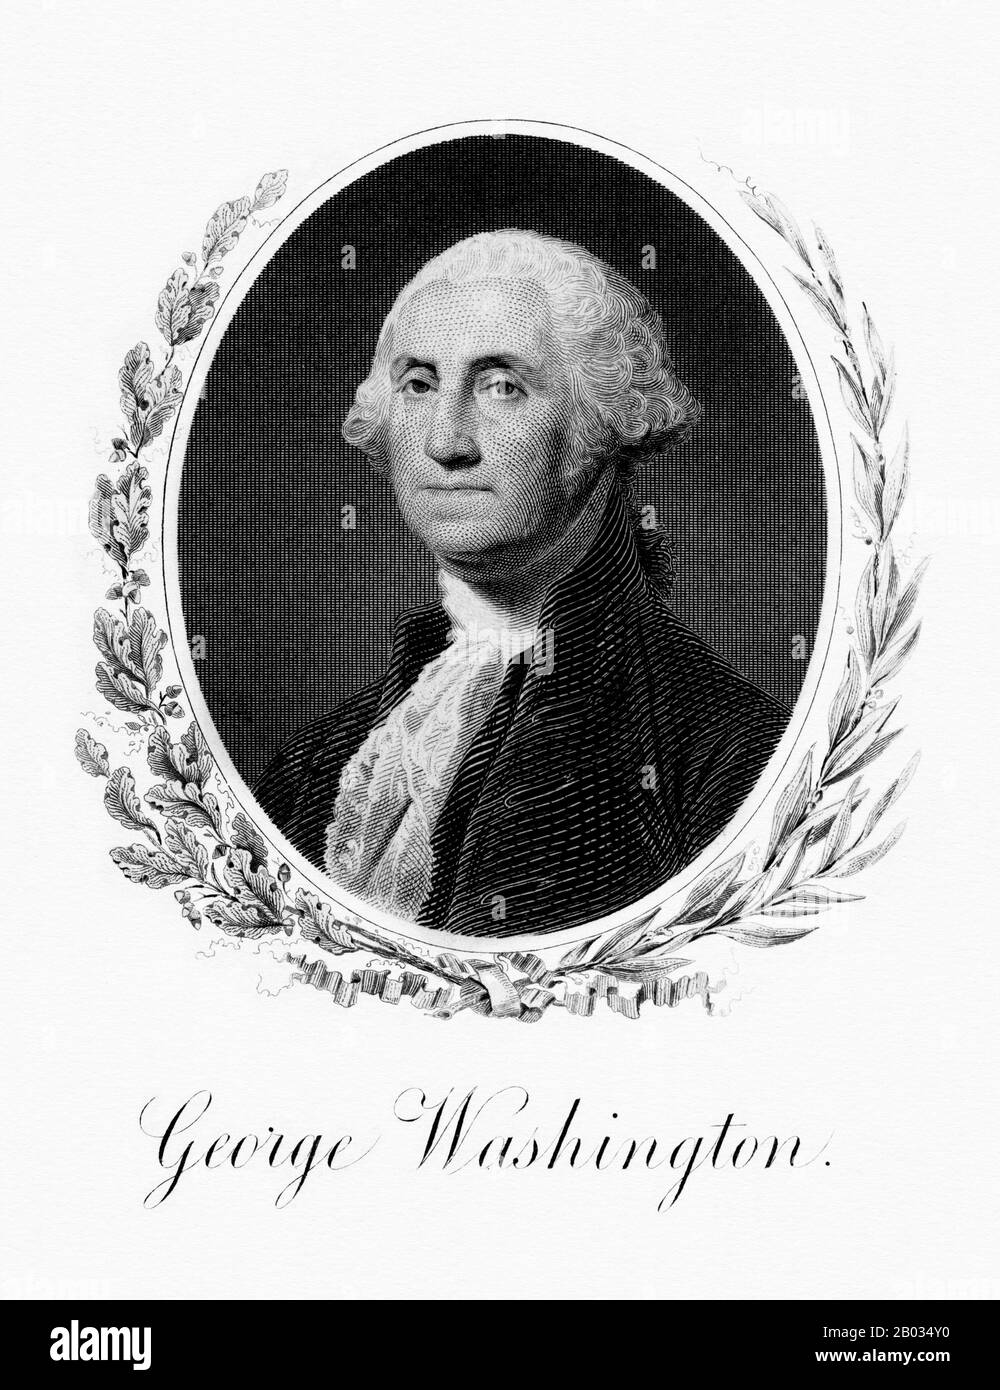 George Washington (22 février 1732 – 14 décembre 1799) a été le premier président des États-Unis (1789–1997), le commandant en chef de l'armée continentale pendant la guerre révolutionnaire américaine et l'un des pères fondateurs des États-Unis. Il a présidé la convention qui a rédigé l'actuelle Constitution des États-Unis et pendant sa vie a été appelée le "père de son pays". Banque D'Images